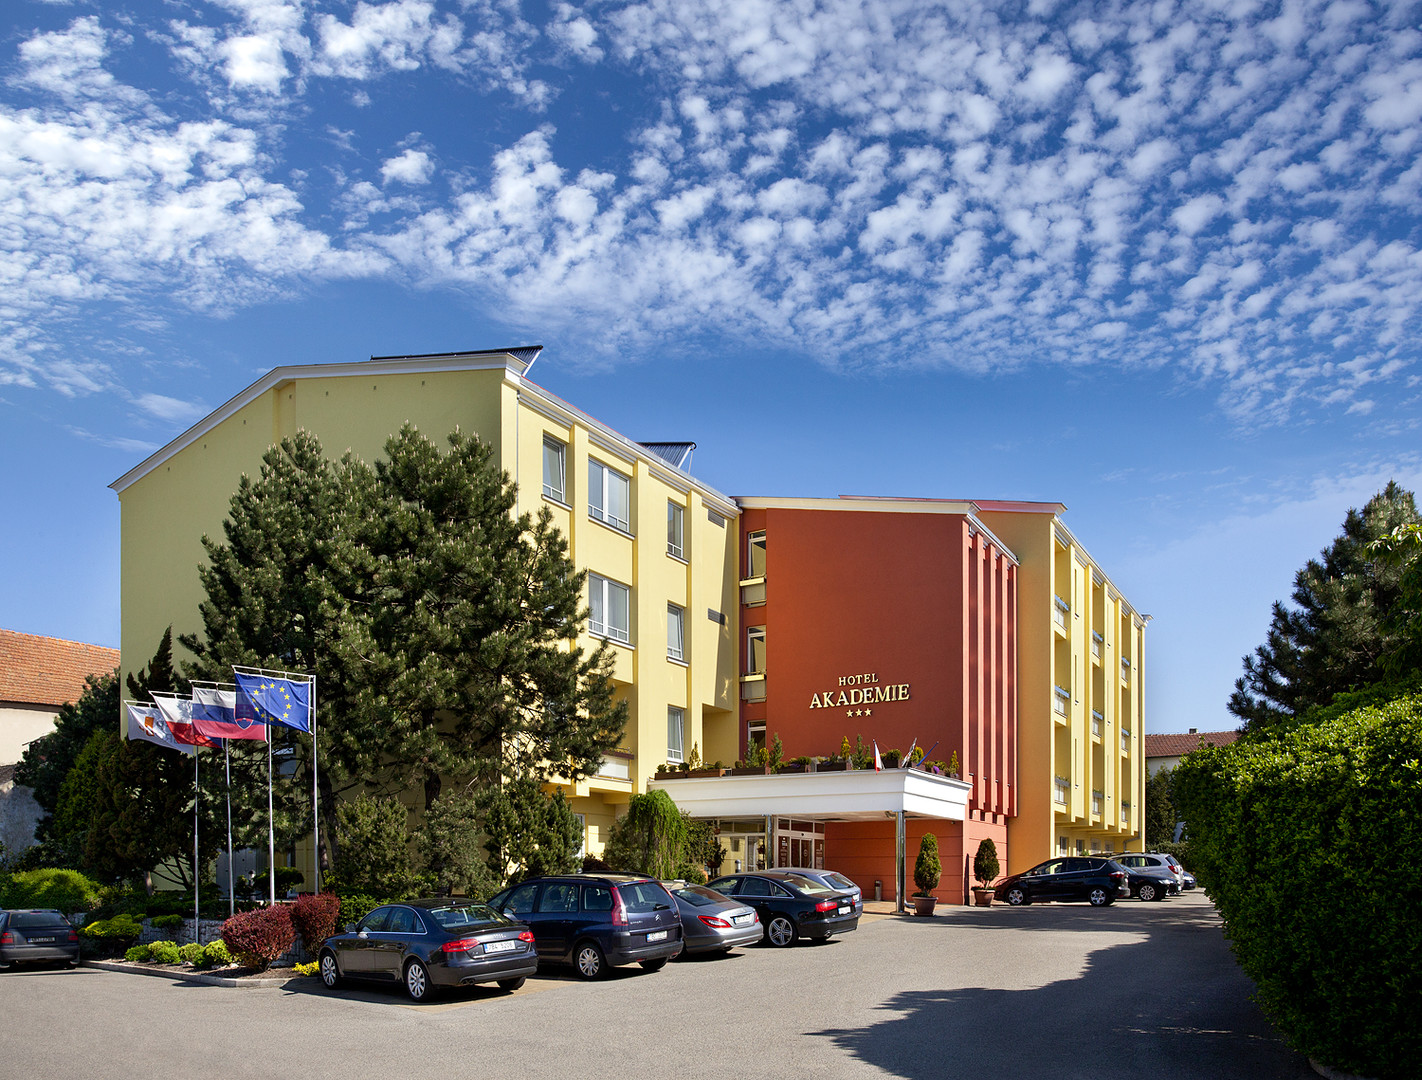 Obrázek hotelu Akademie Velké Bílovice